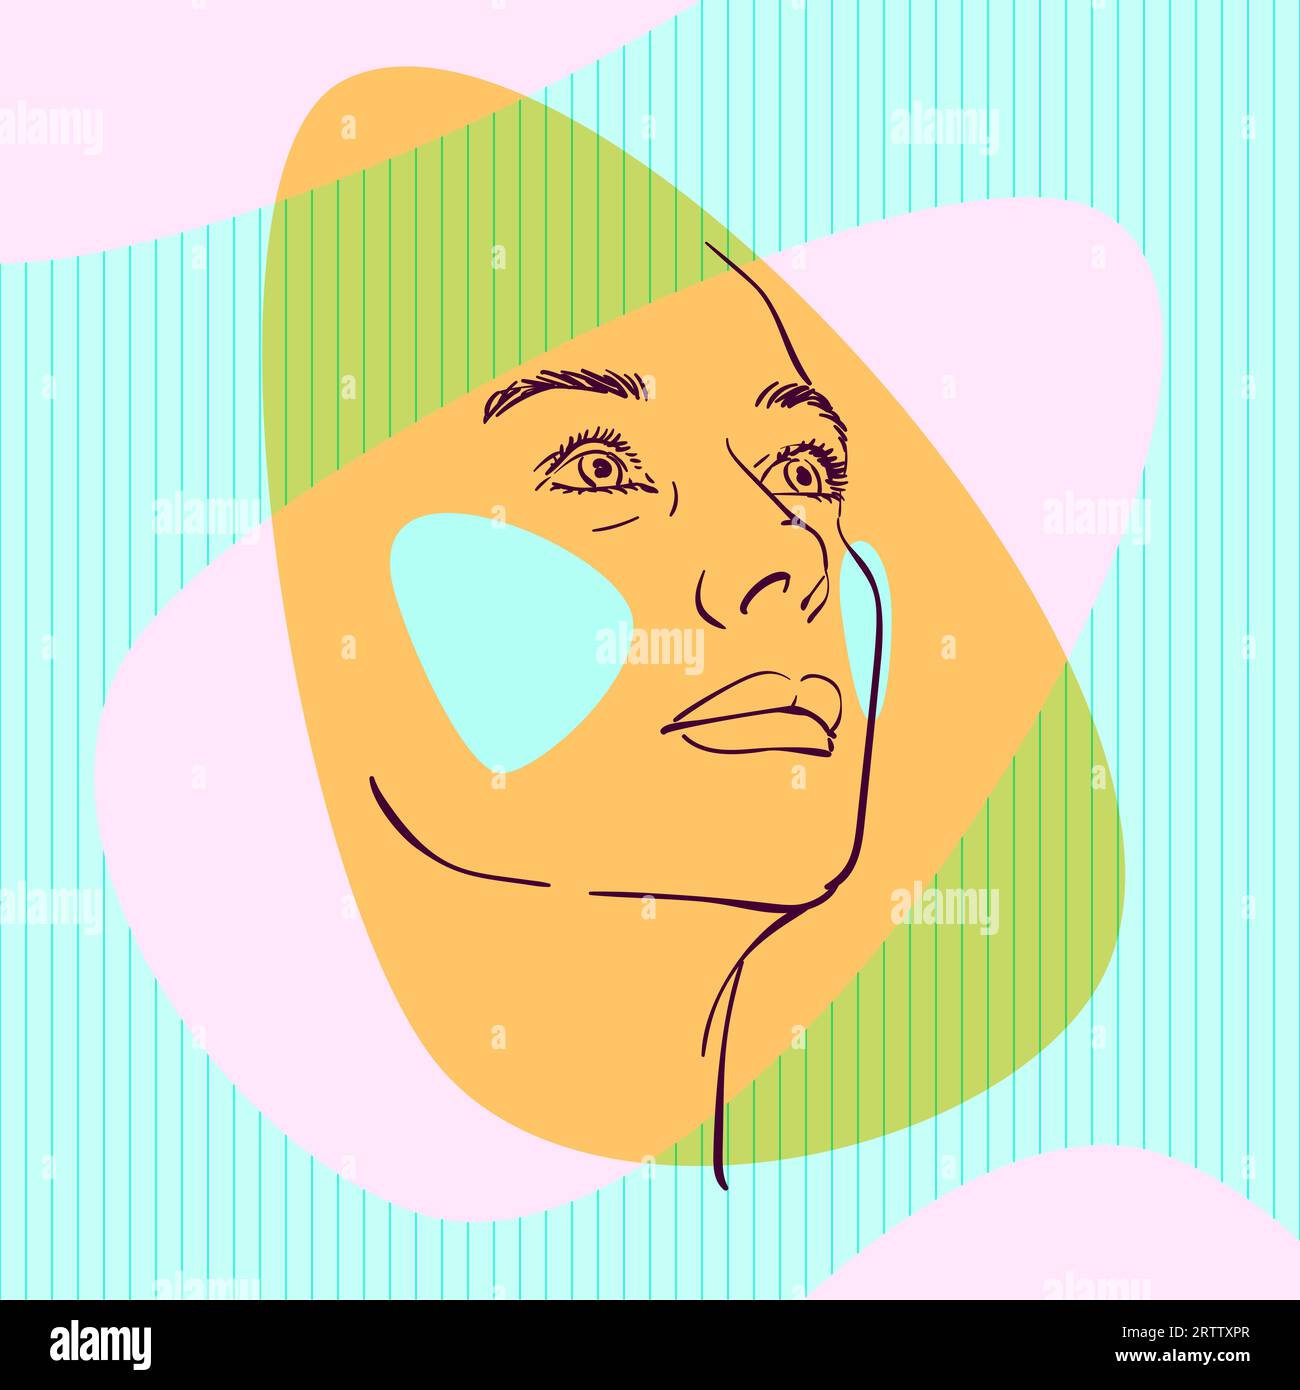 Croquis de la tête de la femme regardant vers le haut sur le côté avec des joues colorées sur aqua menthe et des formes épurées abstraites de couleur rose sur fond carré rayé, Illustration de Vecteur